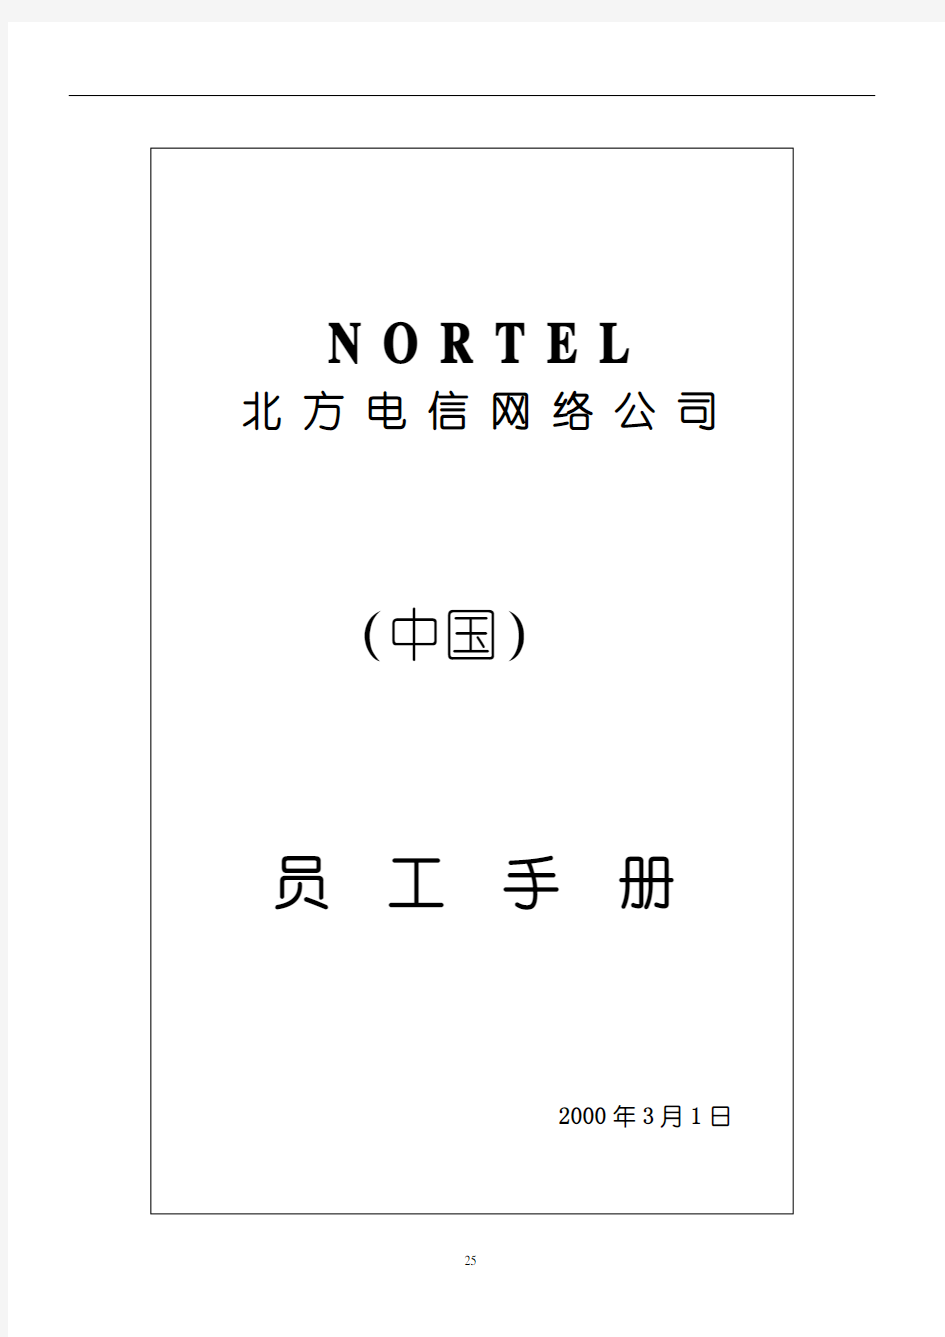 和君创业—浙江移动企业文化建设项目—北方电信员工手册